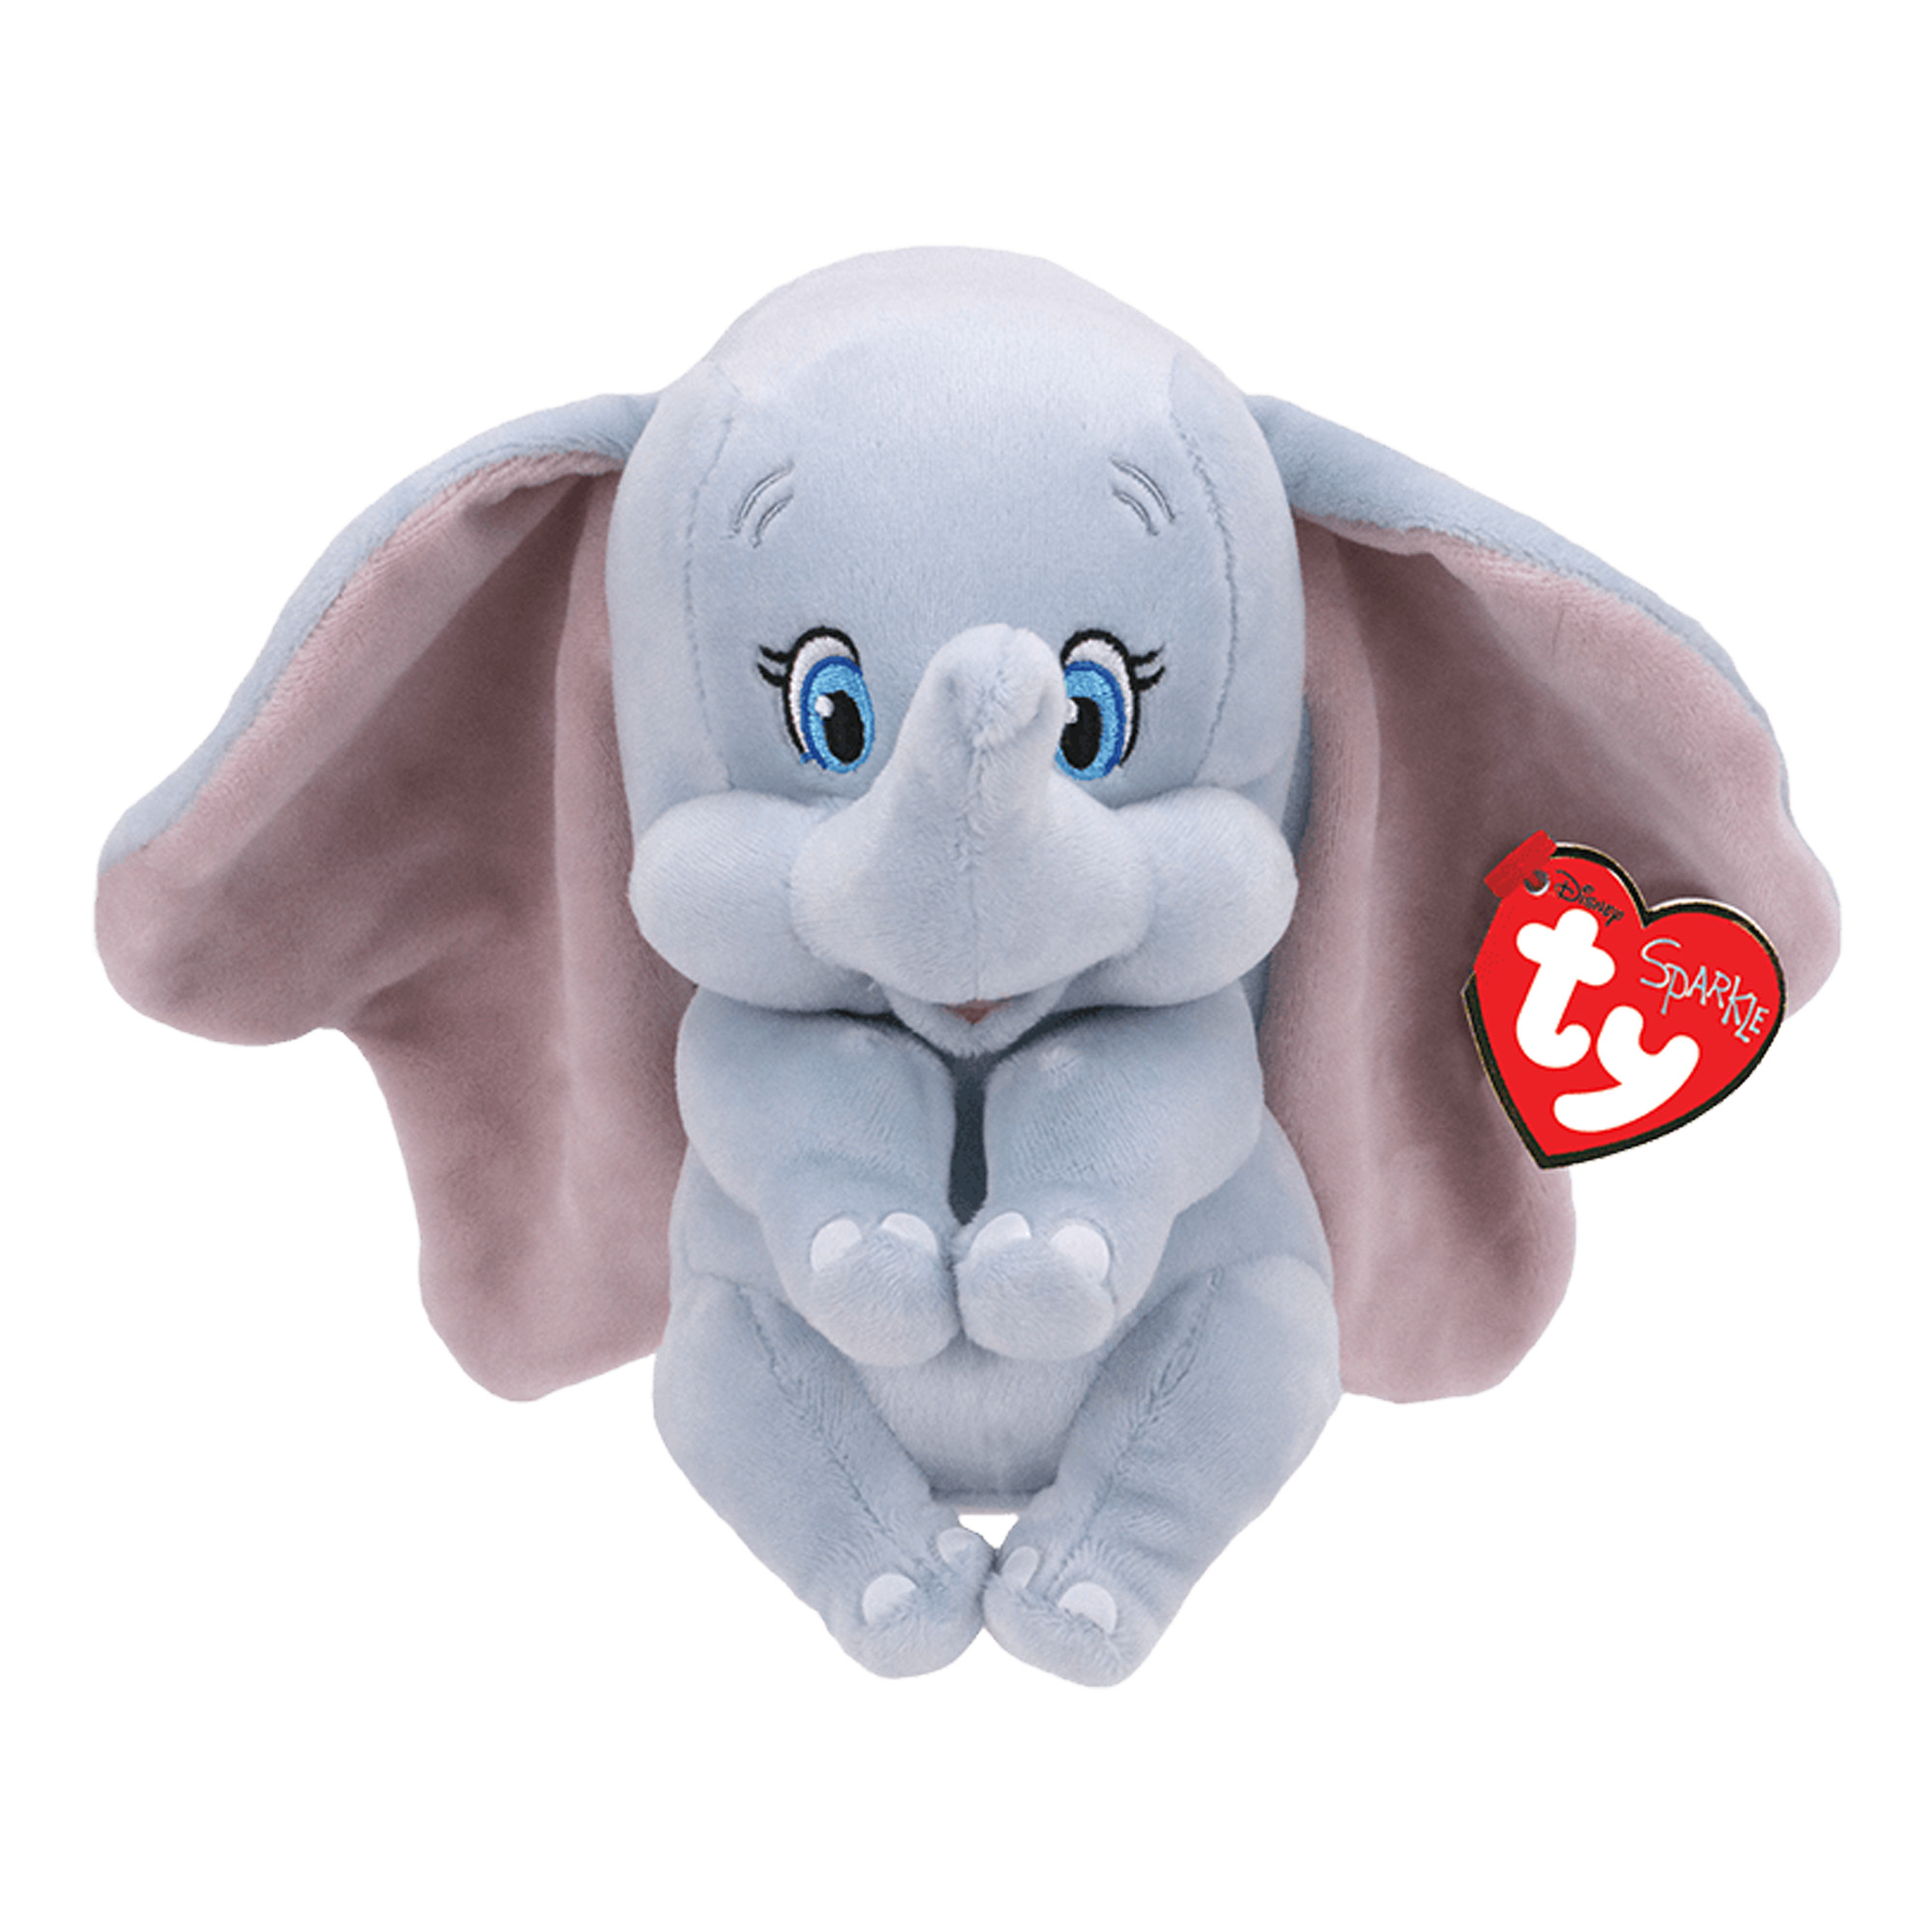 Dumbo Plüschfigur mit Sound (40 cm) - Disney